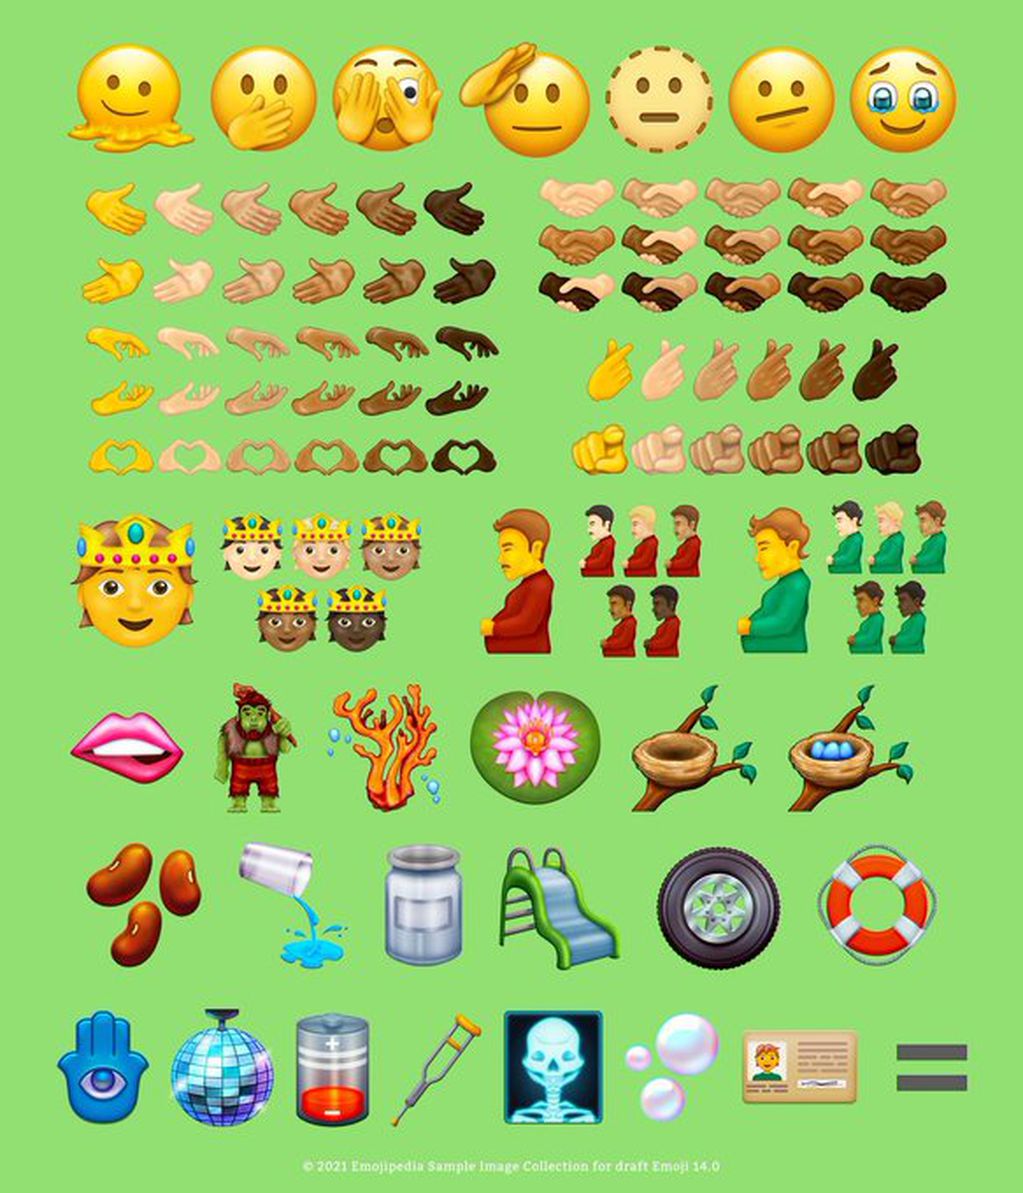 La cuenta de Emojipedia compartió los bocetos posibles de la nueva gama de emojis que sumará Whatsapp en septiembre.